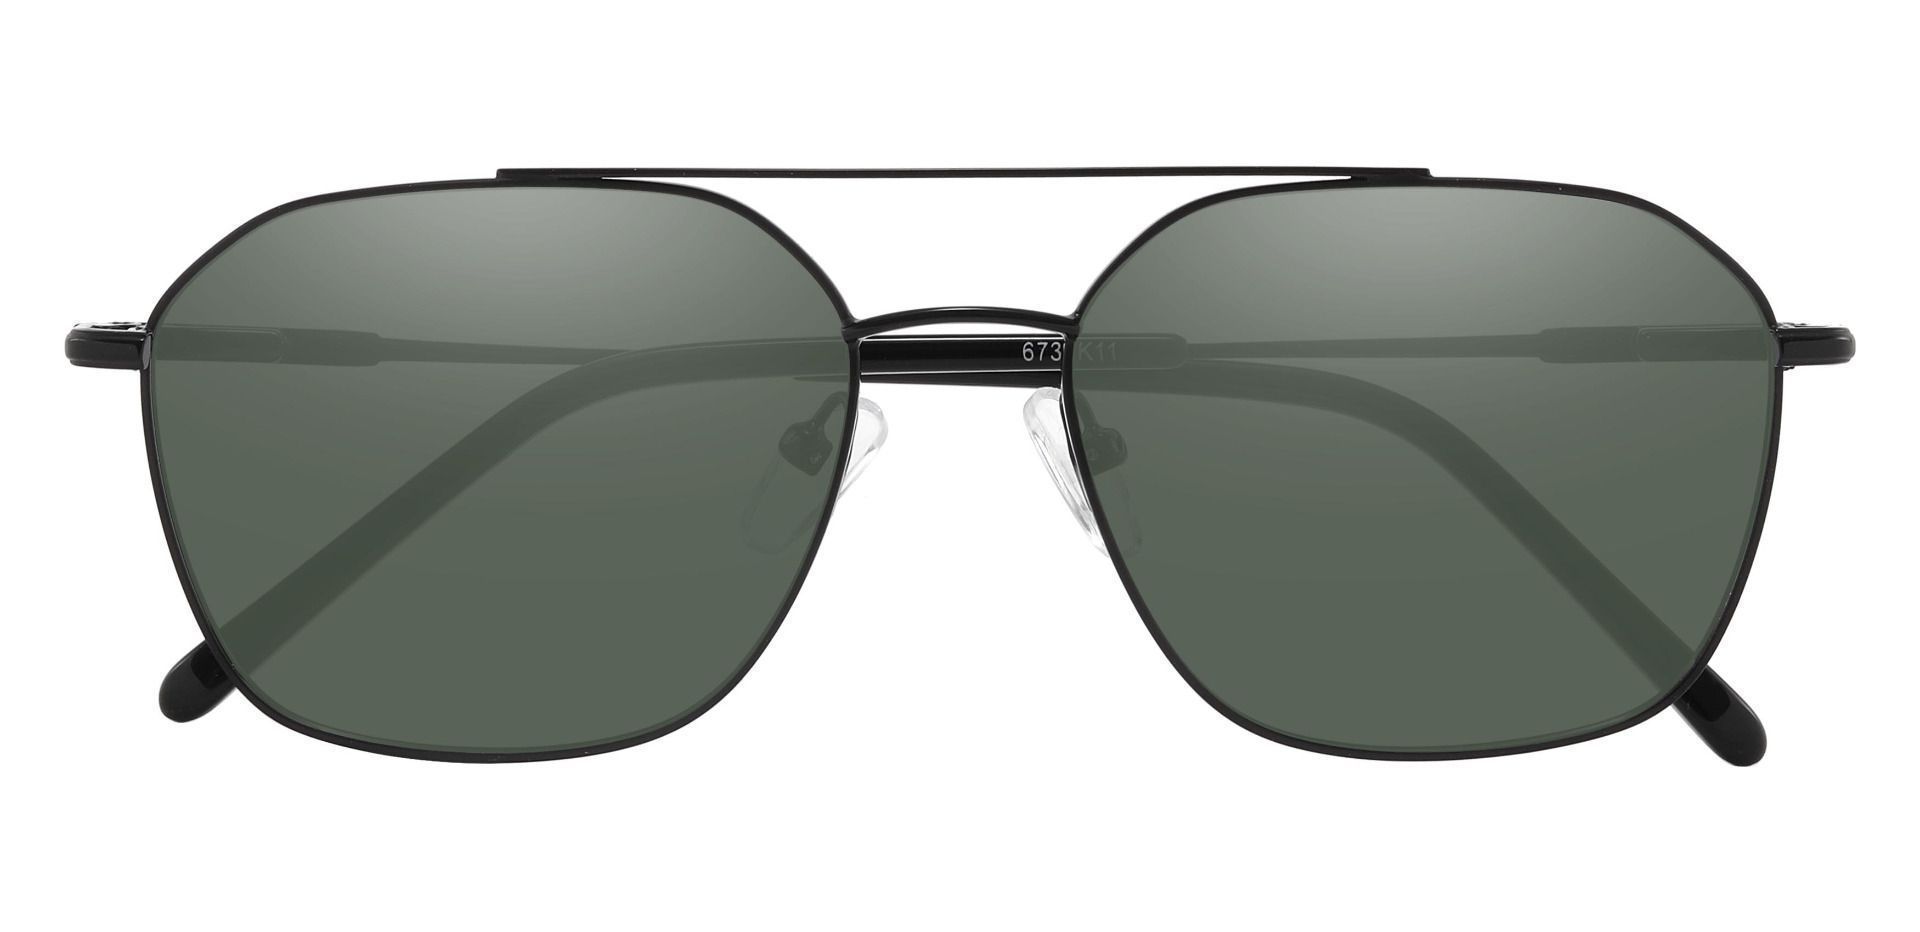 Harvey Aviator Progressive Sunglasses - Black Frame With Green Lenses